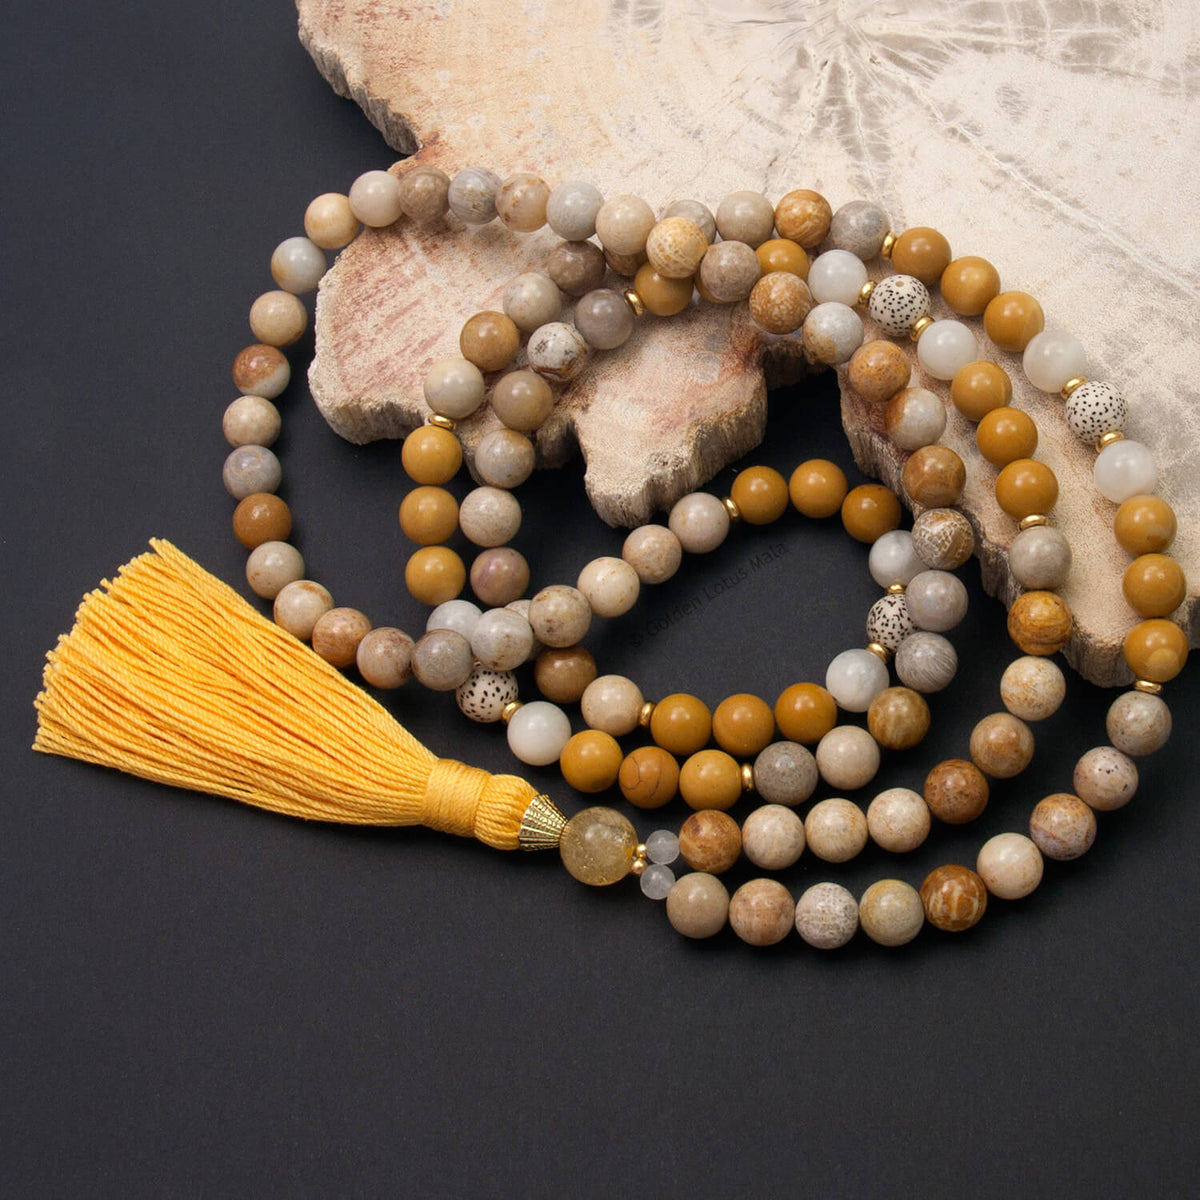 Yellow Meditation Gifts & Mala Beads - Golden Lotus Mala